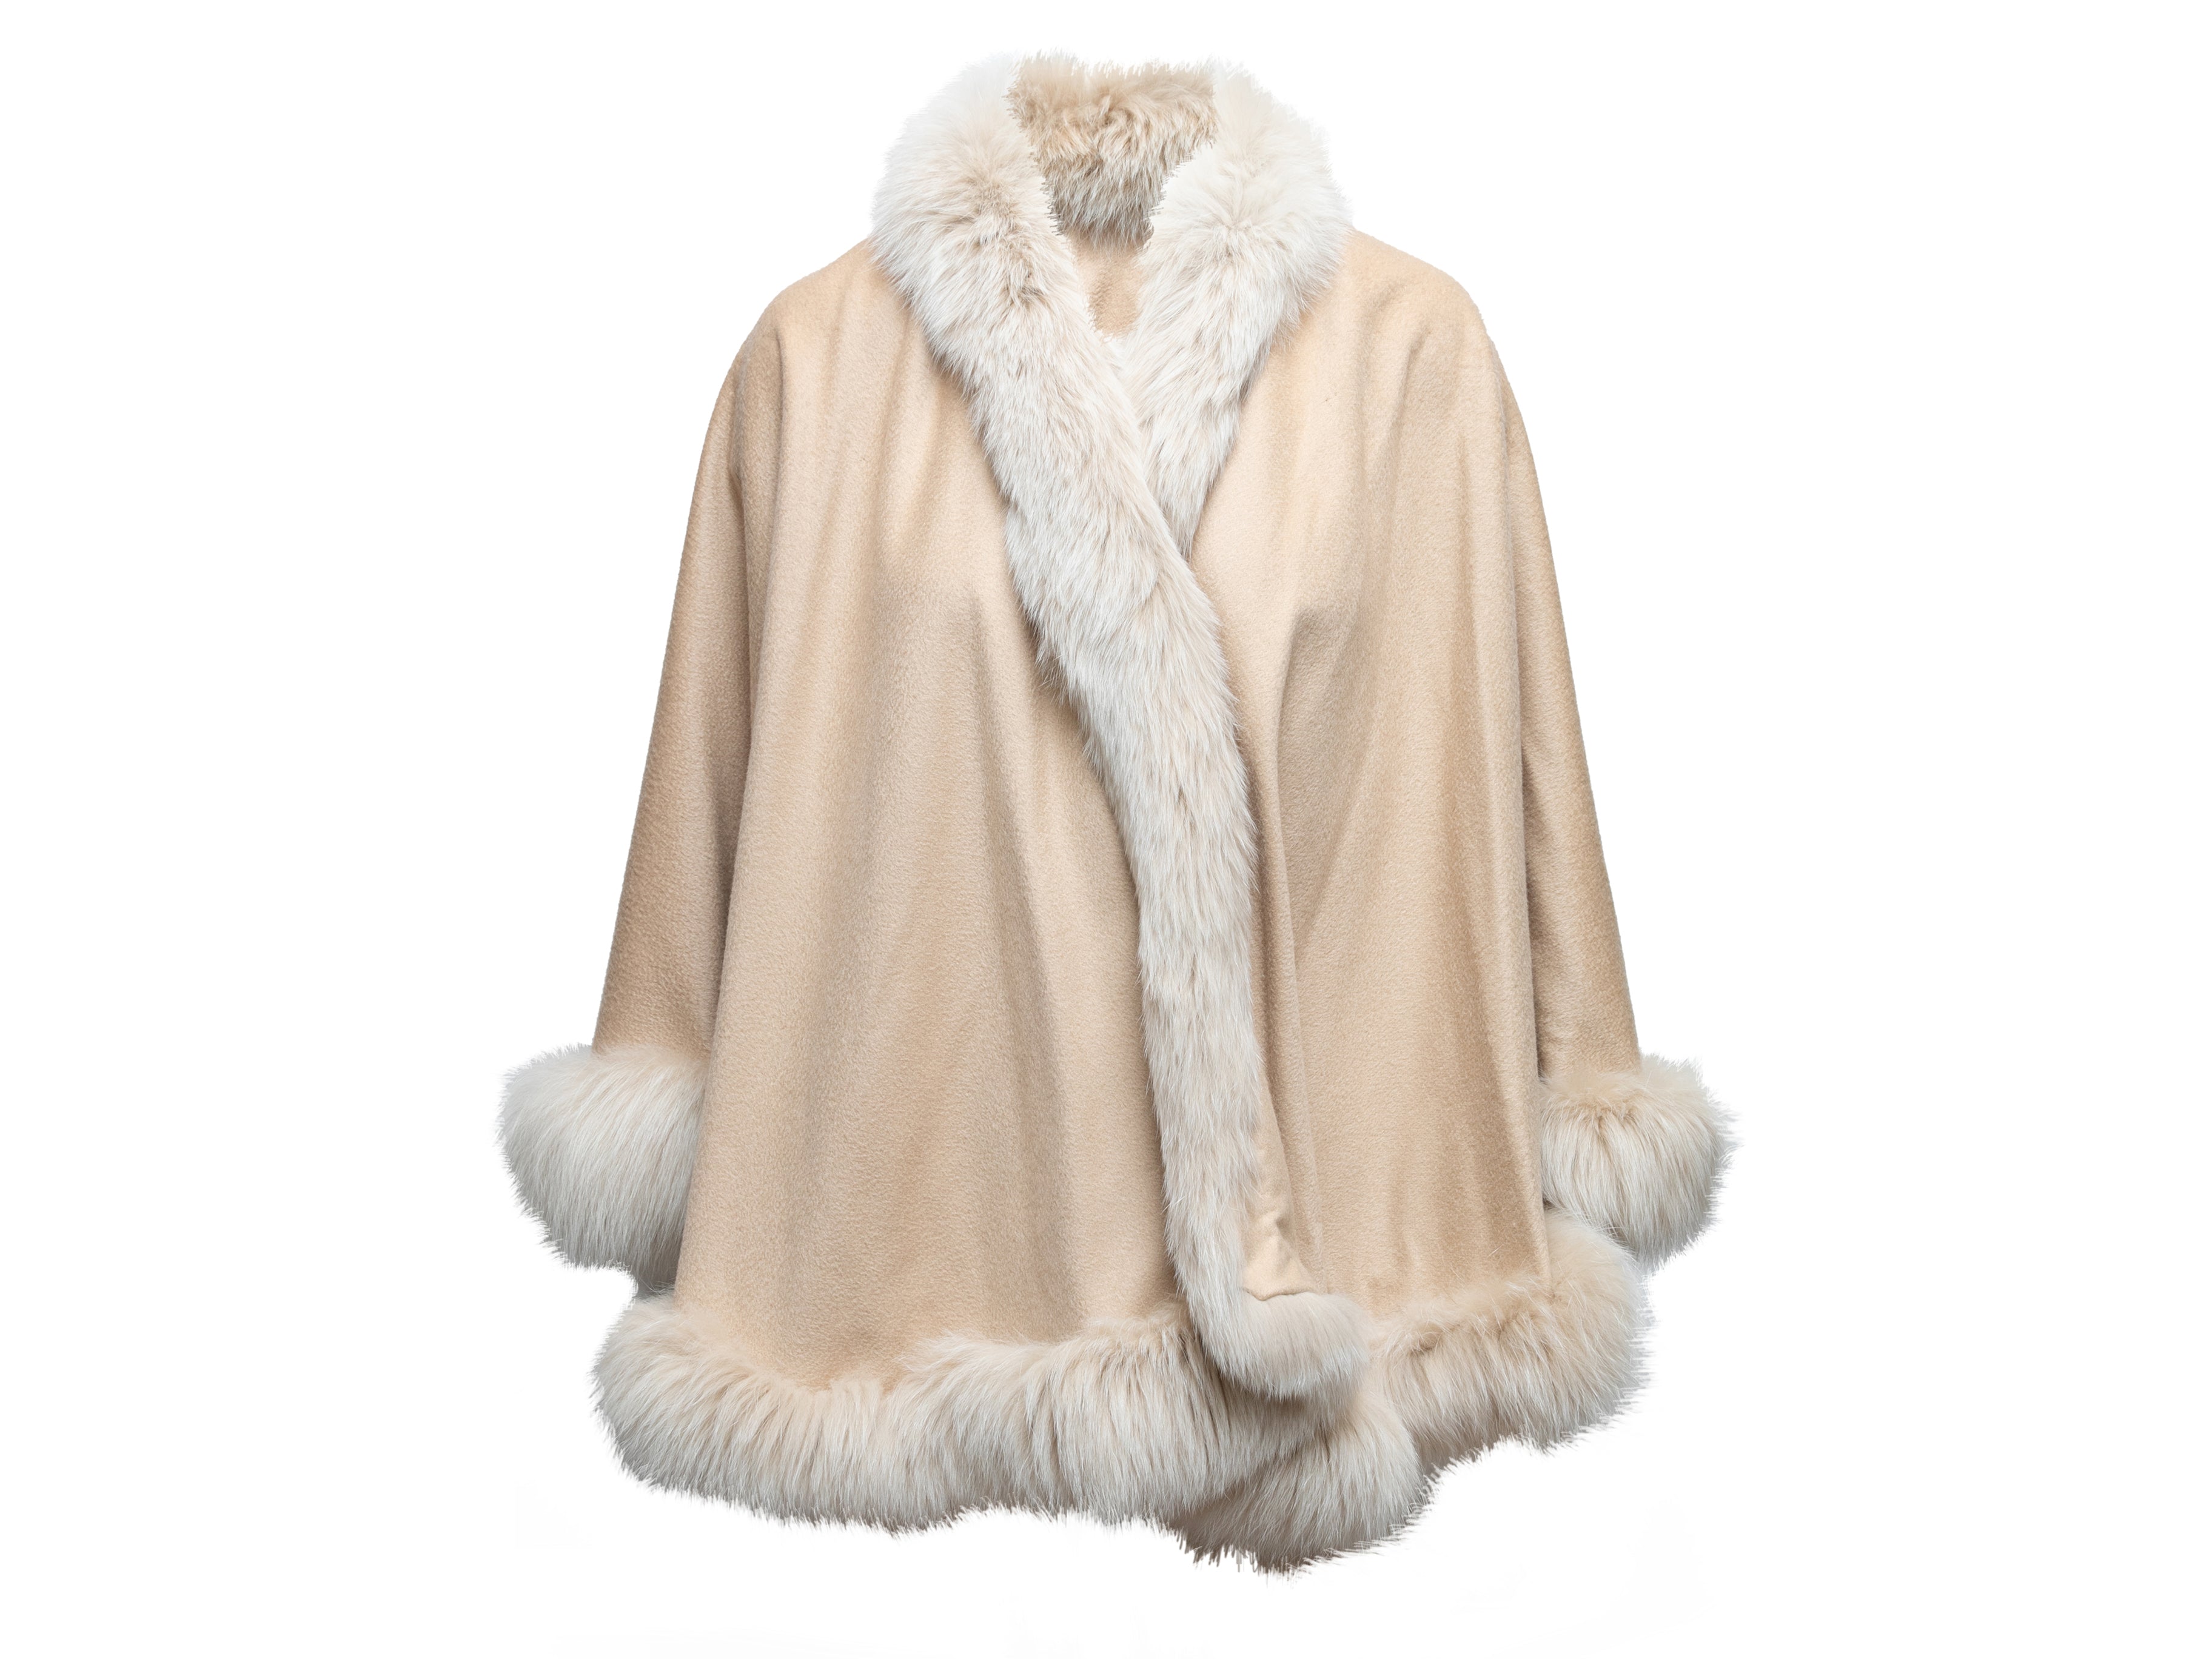 Fur-Trimmed Cashmere Cape Size S